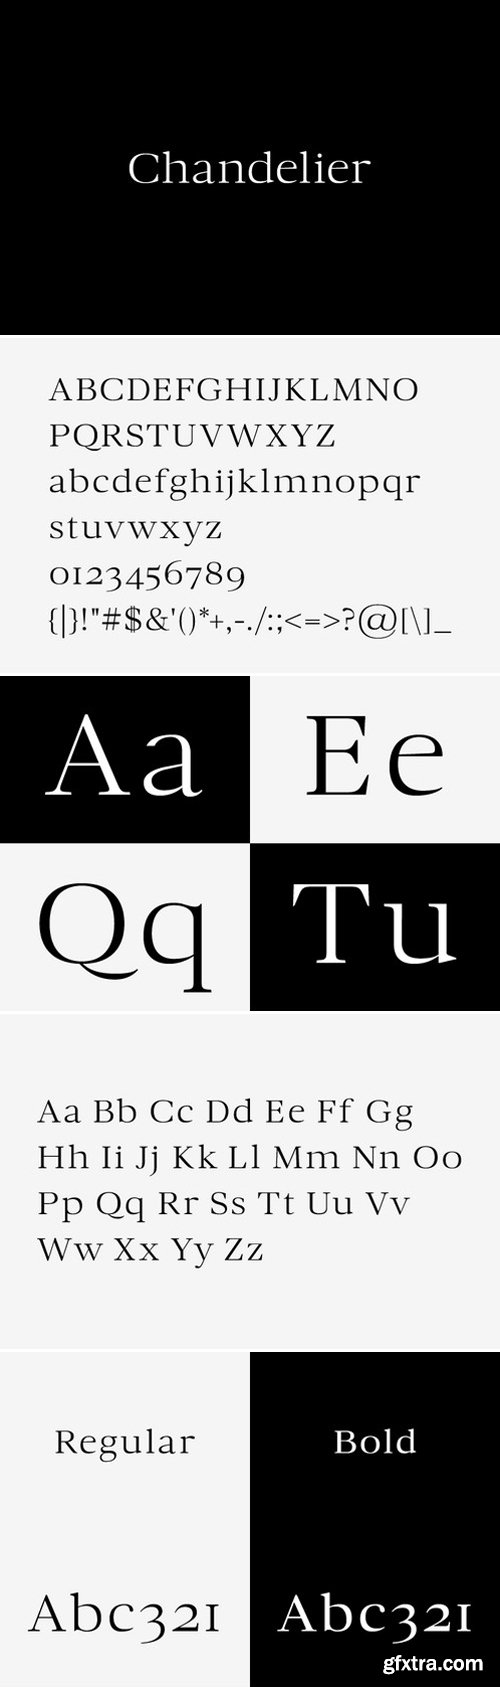 Chandelier Typeface